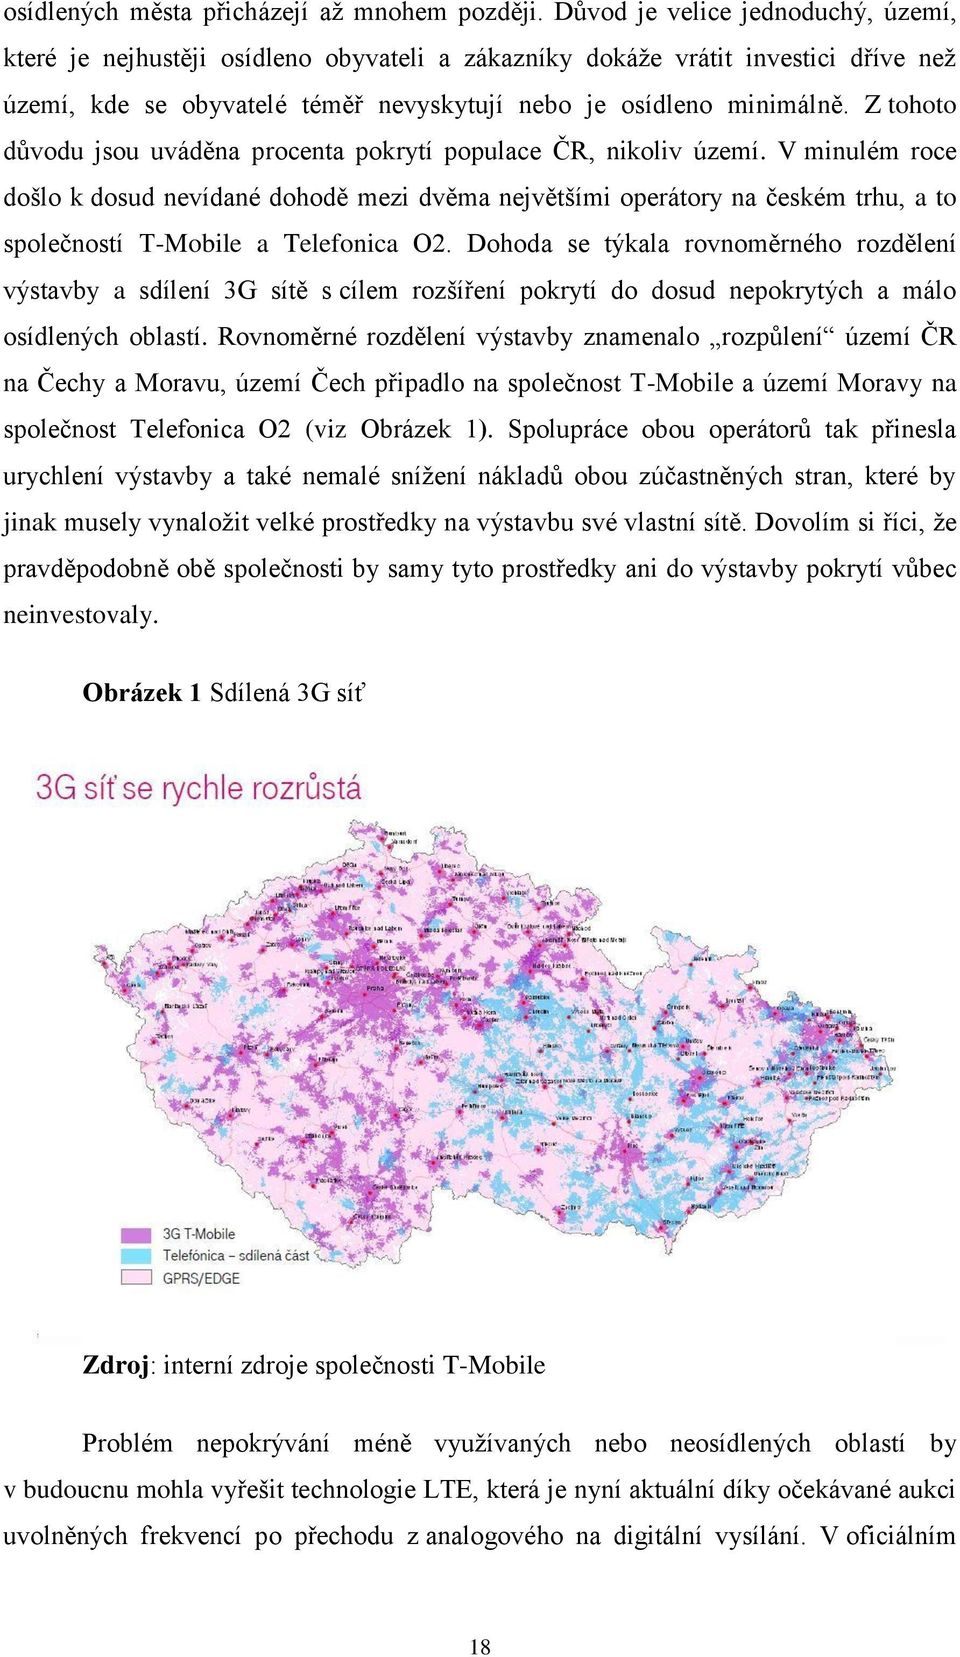 Z tohoto důvodu jsou uváděna procenta pokrytí populace ČR, nikoliv území.